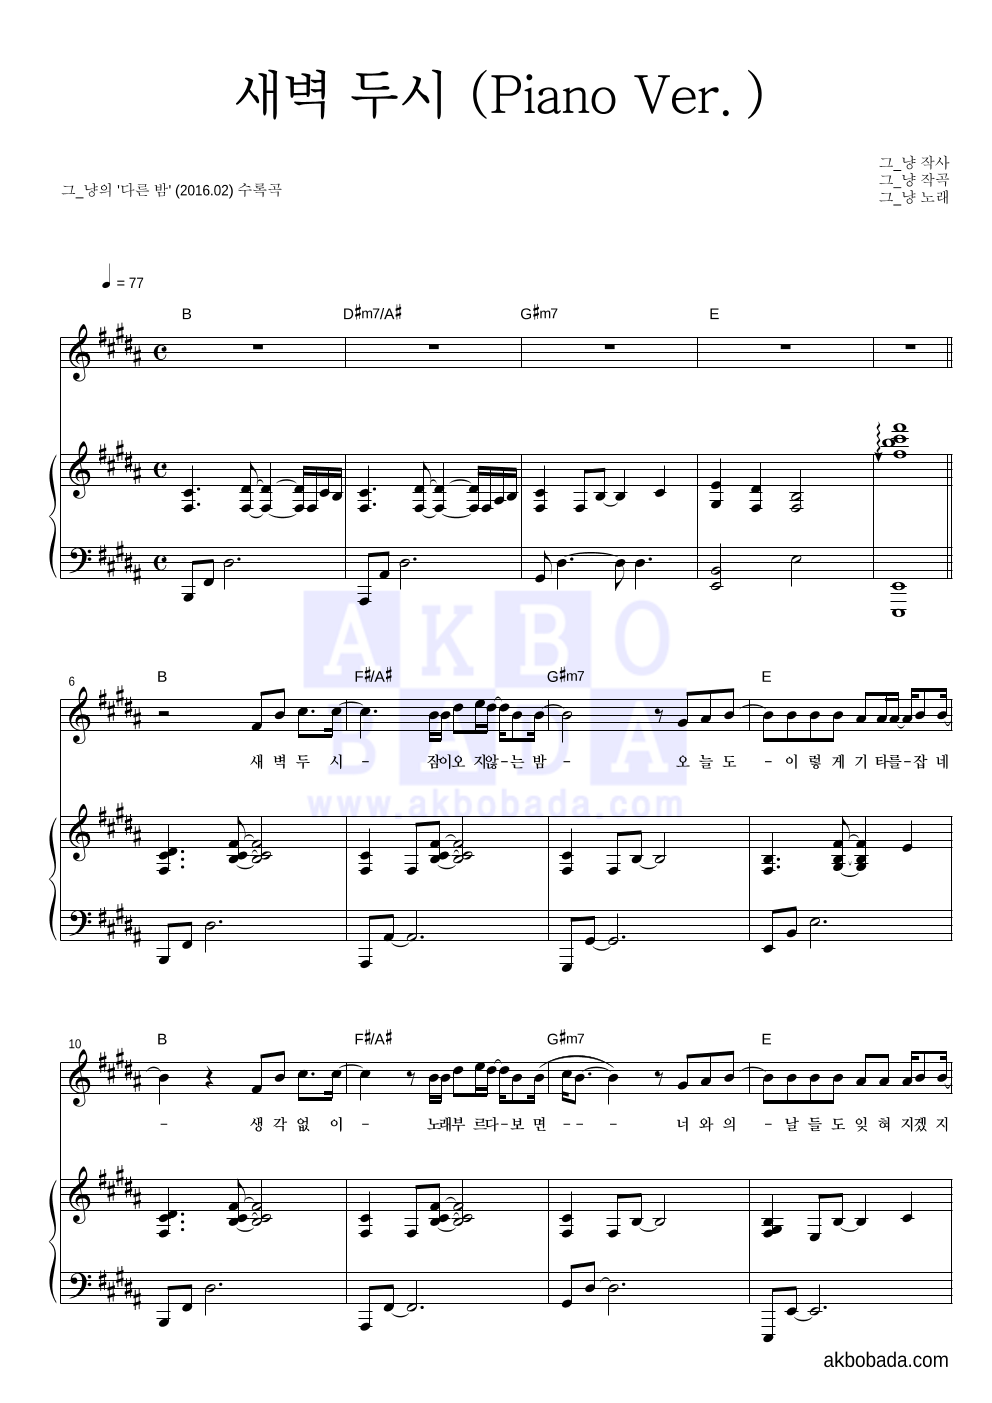 그_냥 - 새벽 두시 (Piano Ver.) 피아노 3단 악보 